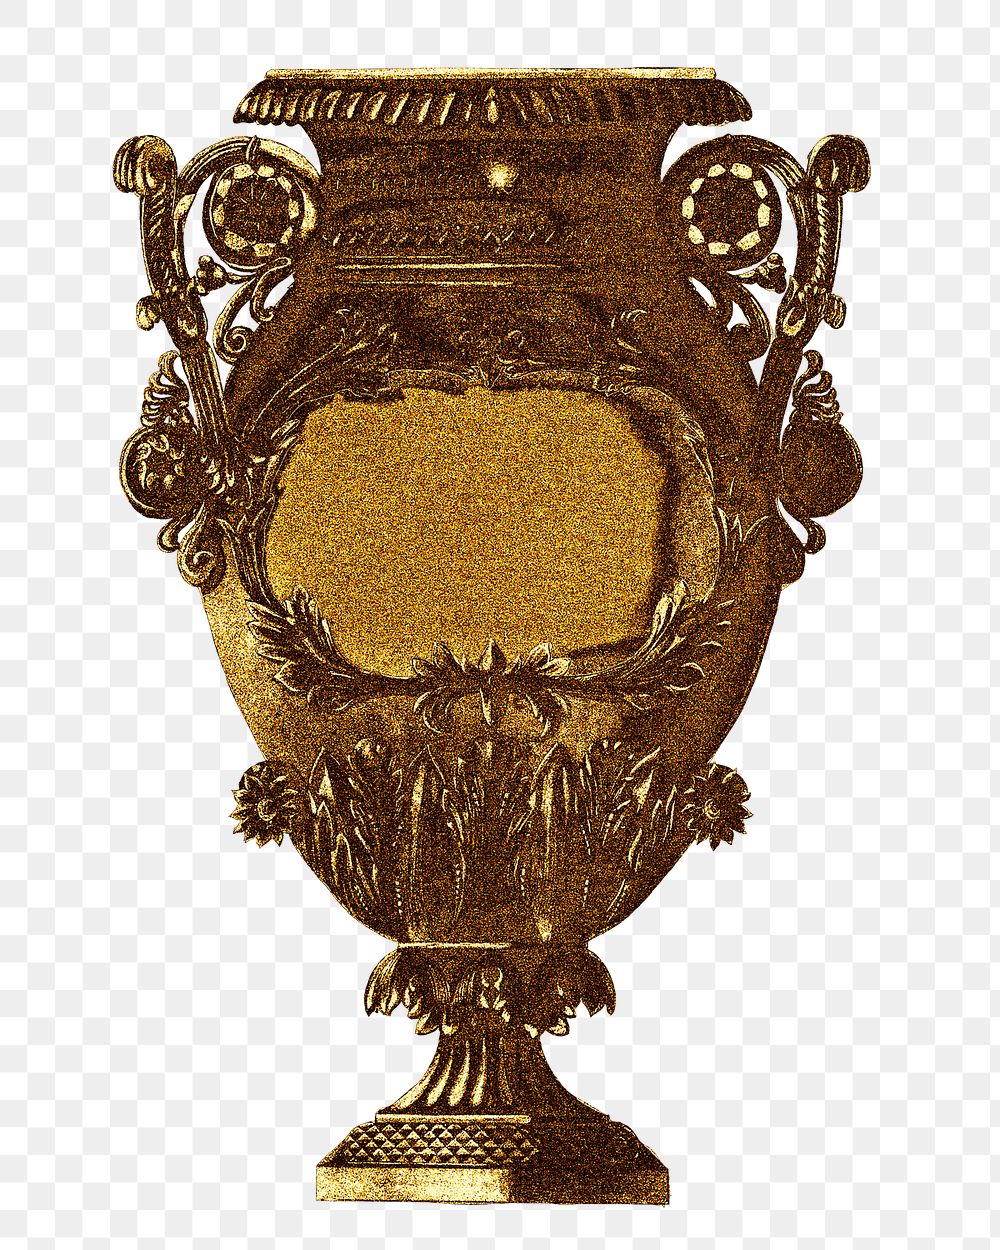 Vintage gold metal vase design element